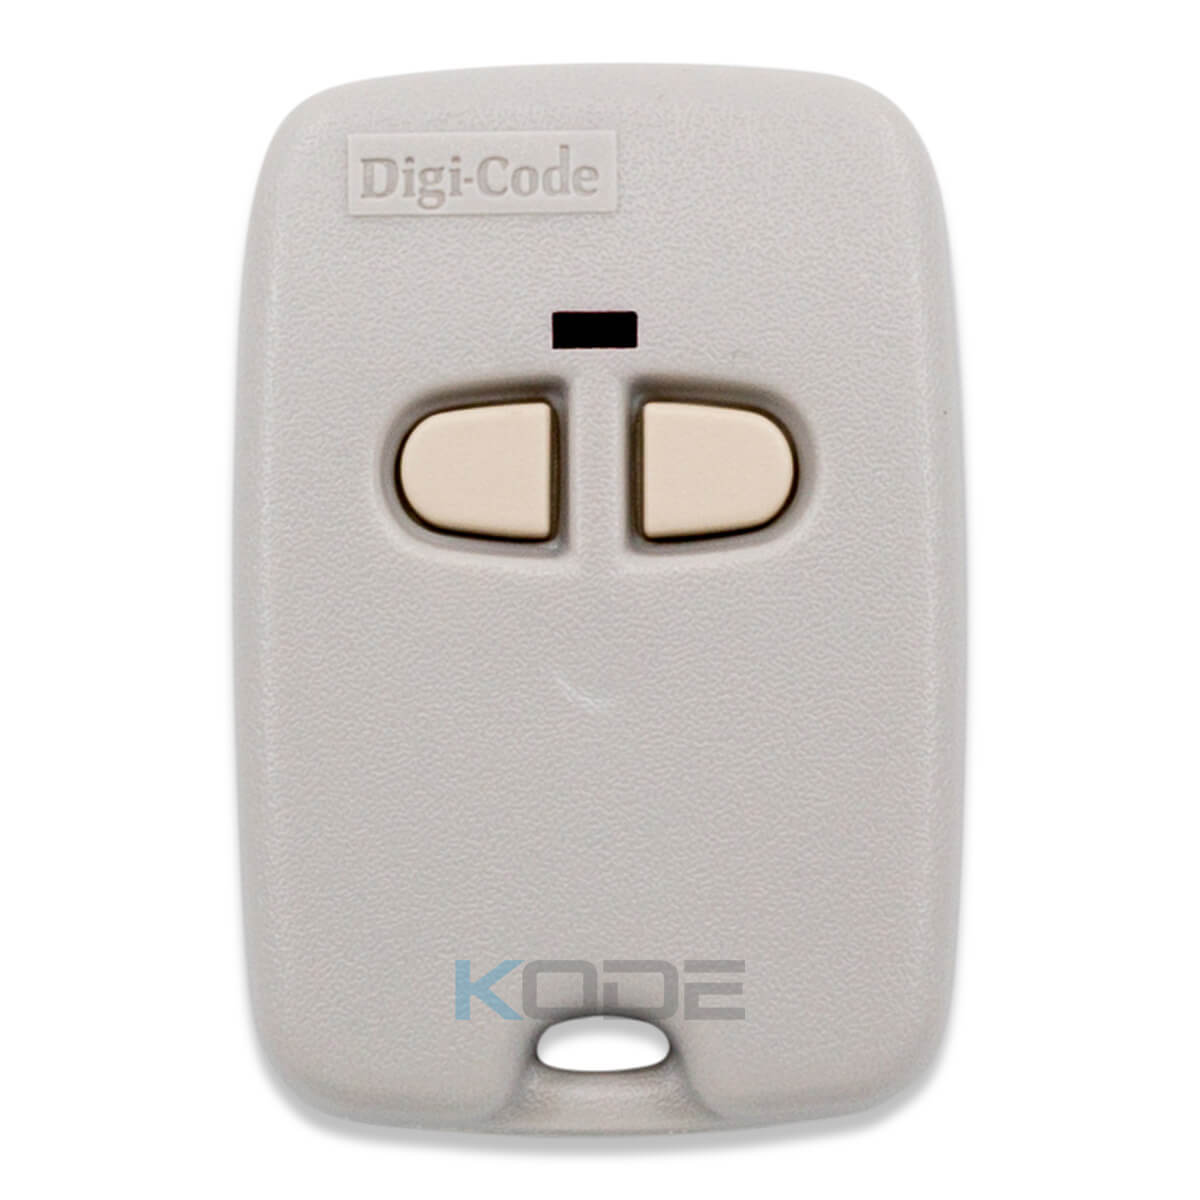 Digi-Code 5070 2 button Garage Door Remote